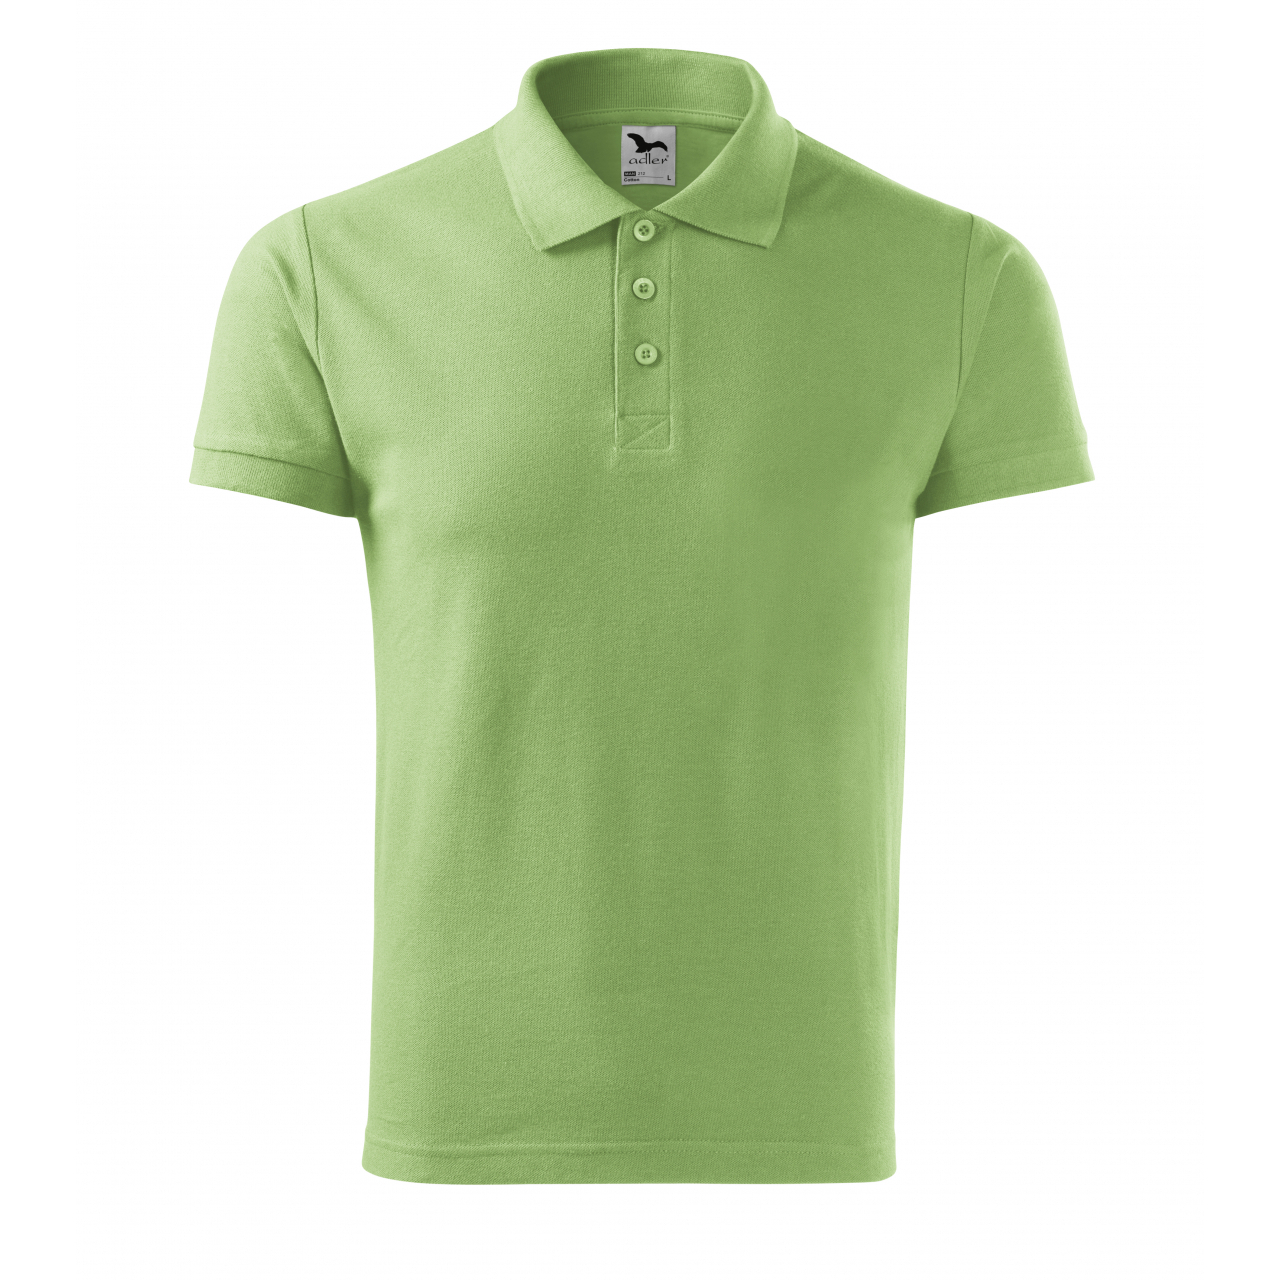 Polokošile pánská Malfini Cotton - světle zelená, XL